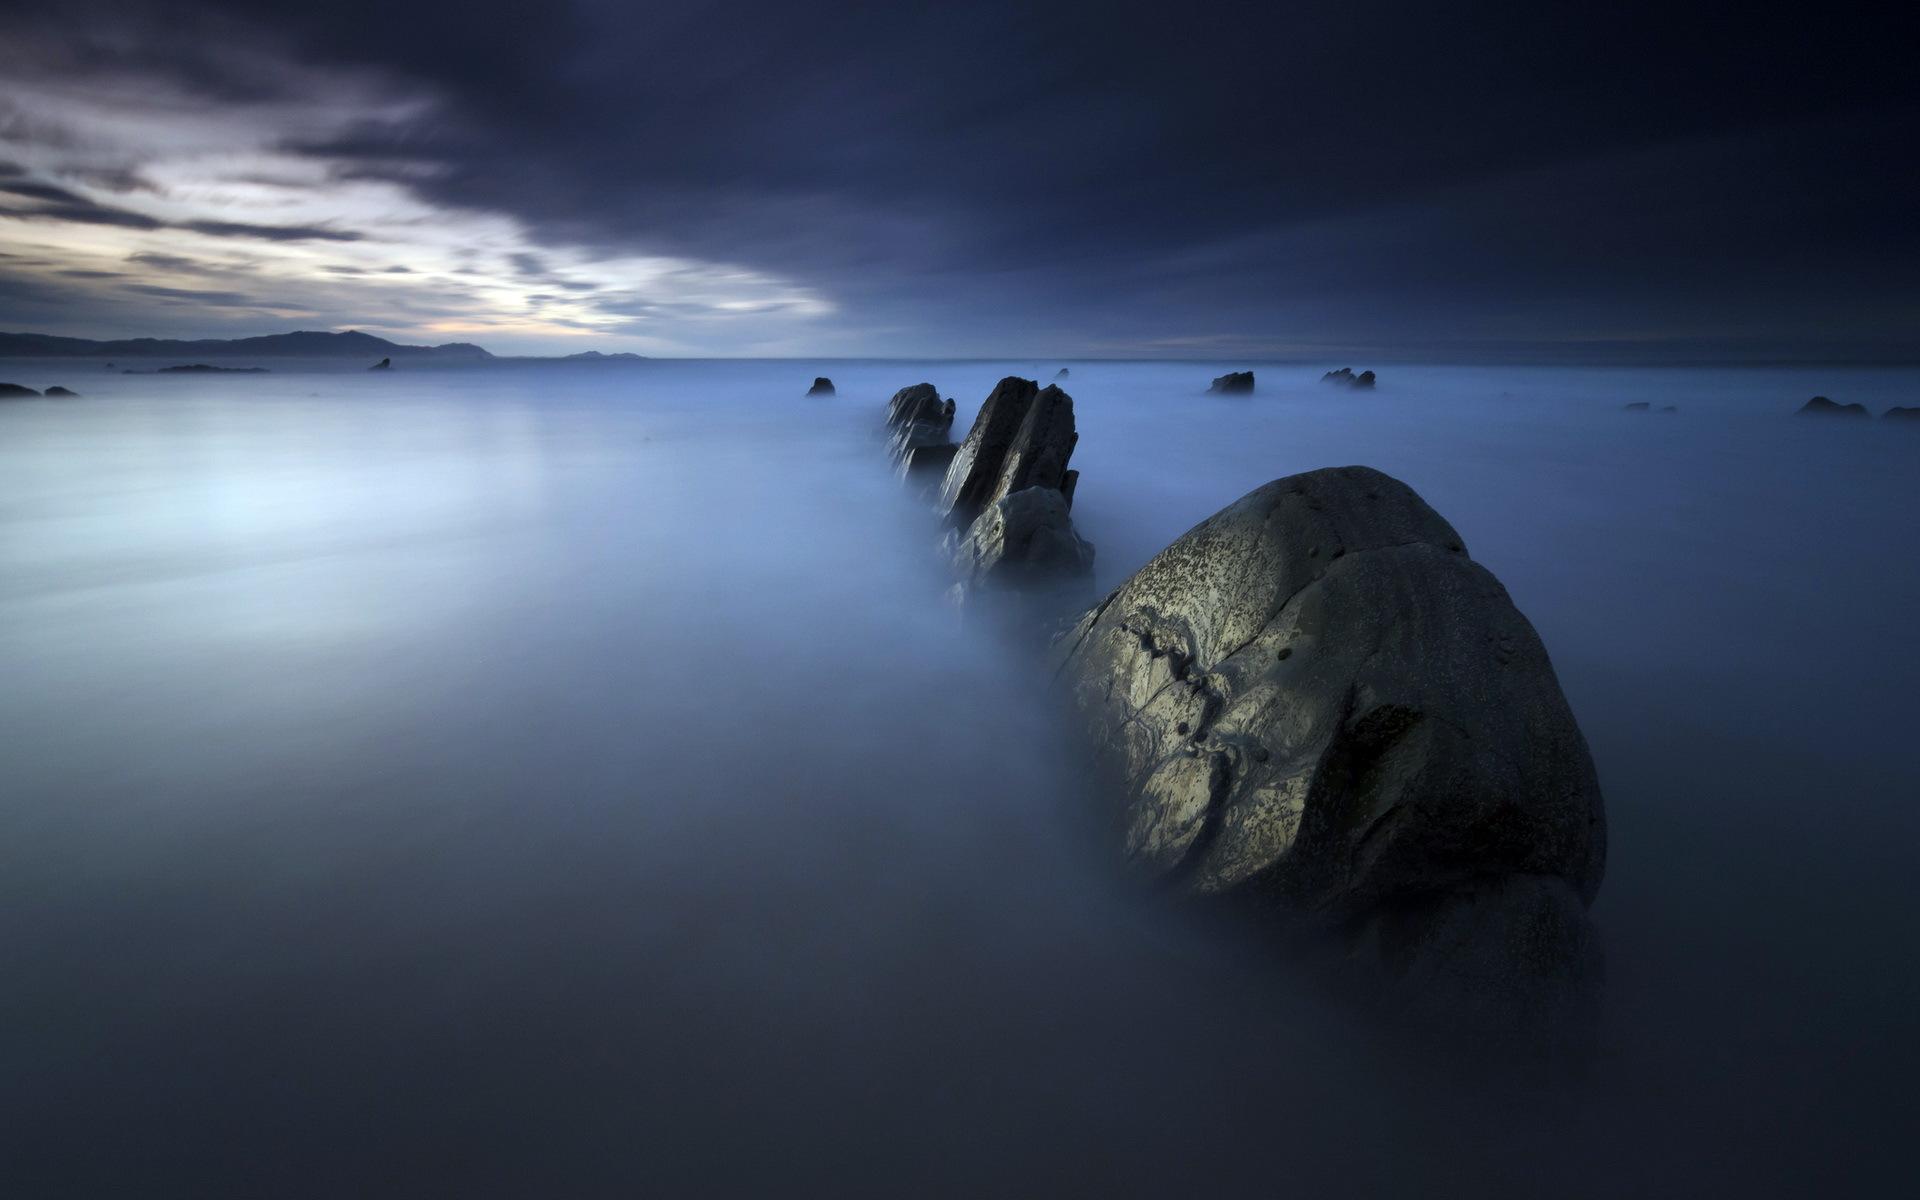 Oceanfront rocks in the mist